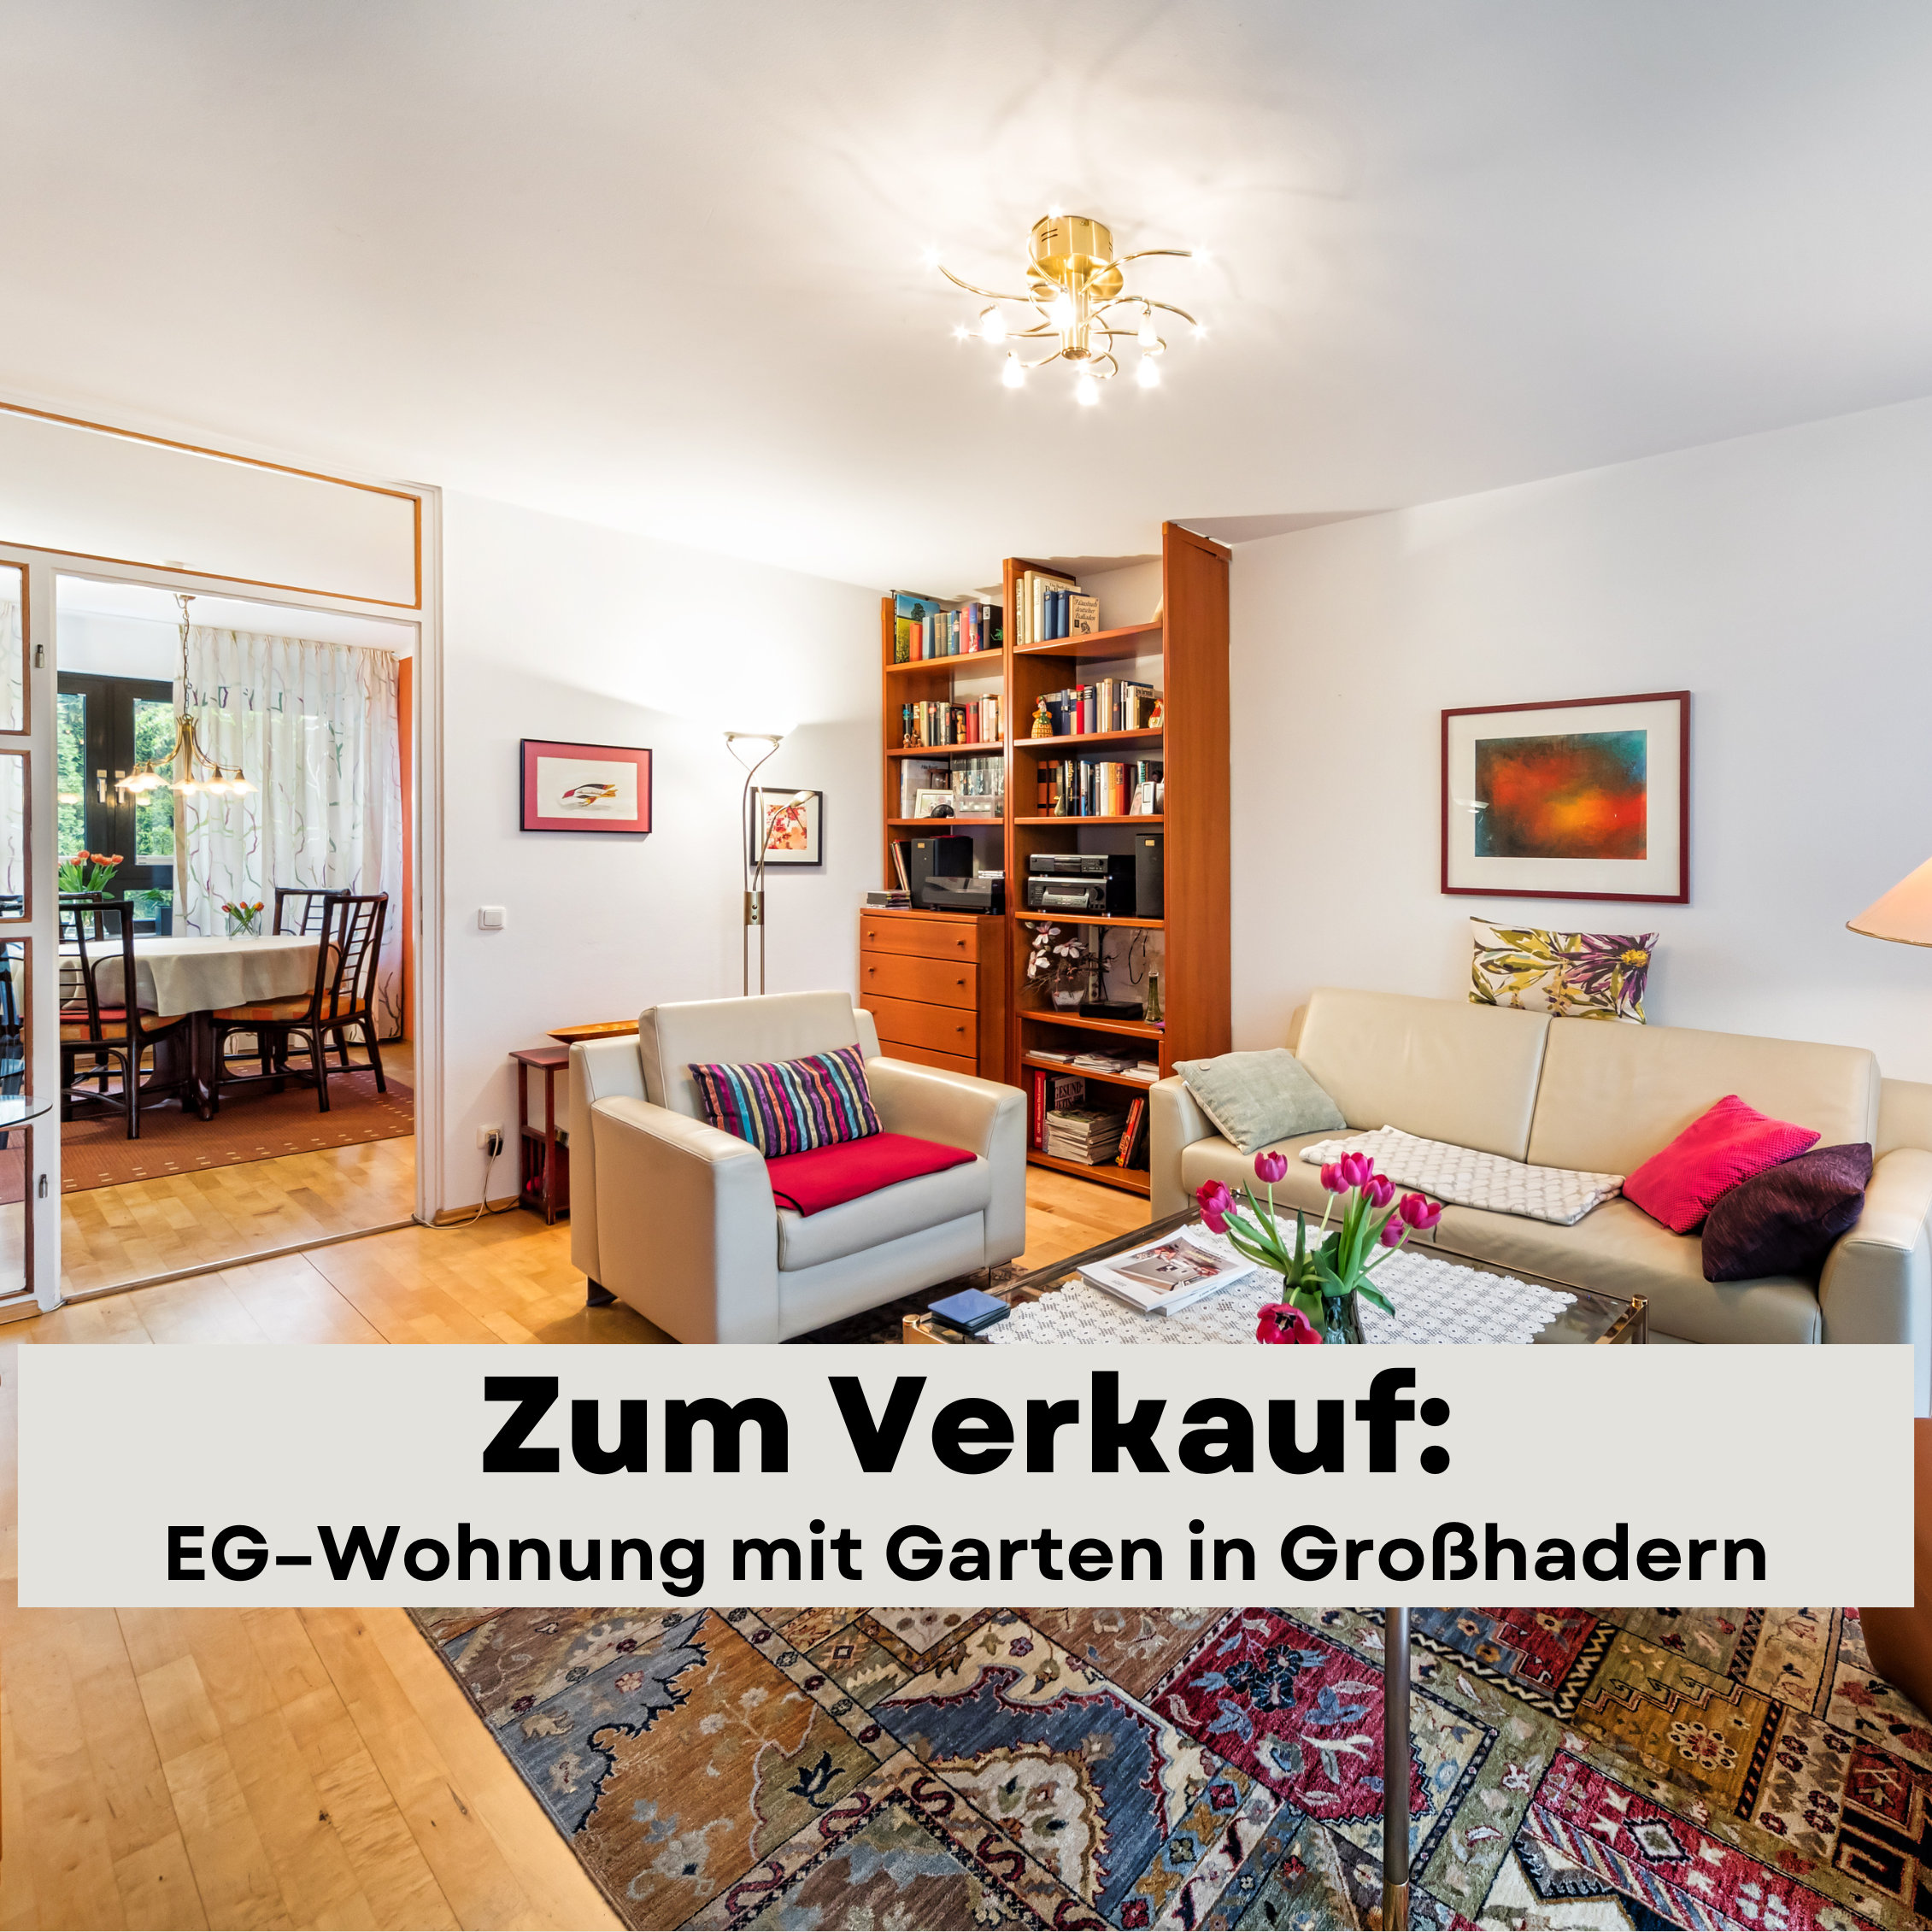 Zum Verkauf_EG–Wohnung mit Garten in Großhadern-Wandl Immobilien_Immobilien Makler München_6251 - Mering